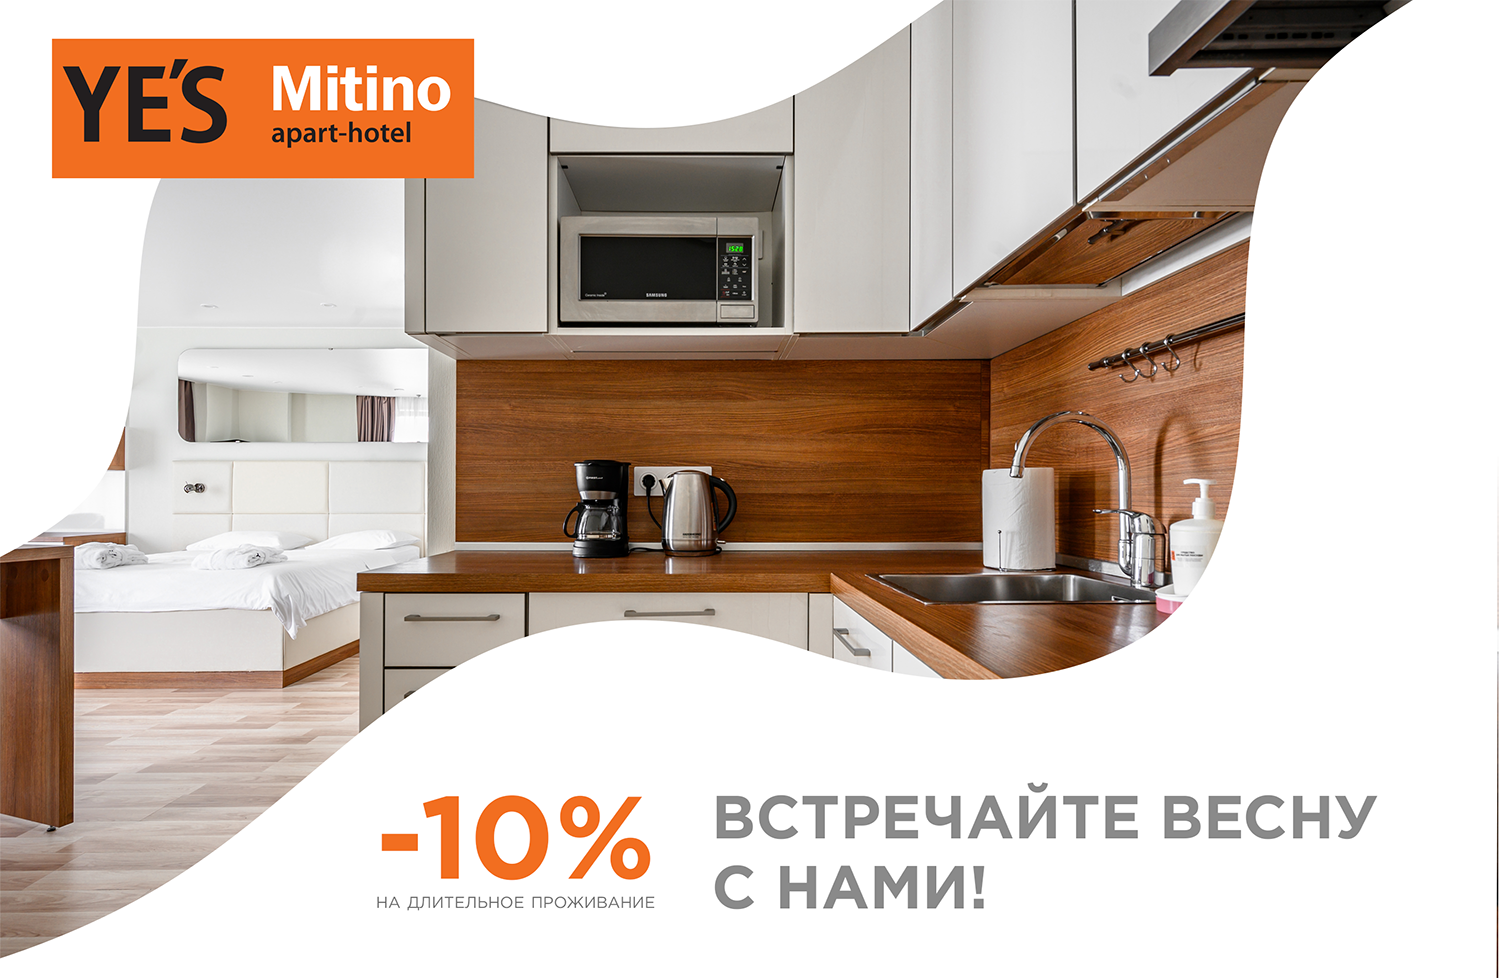 YE’S Mitino дарит -10%